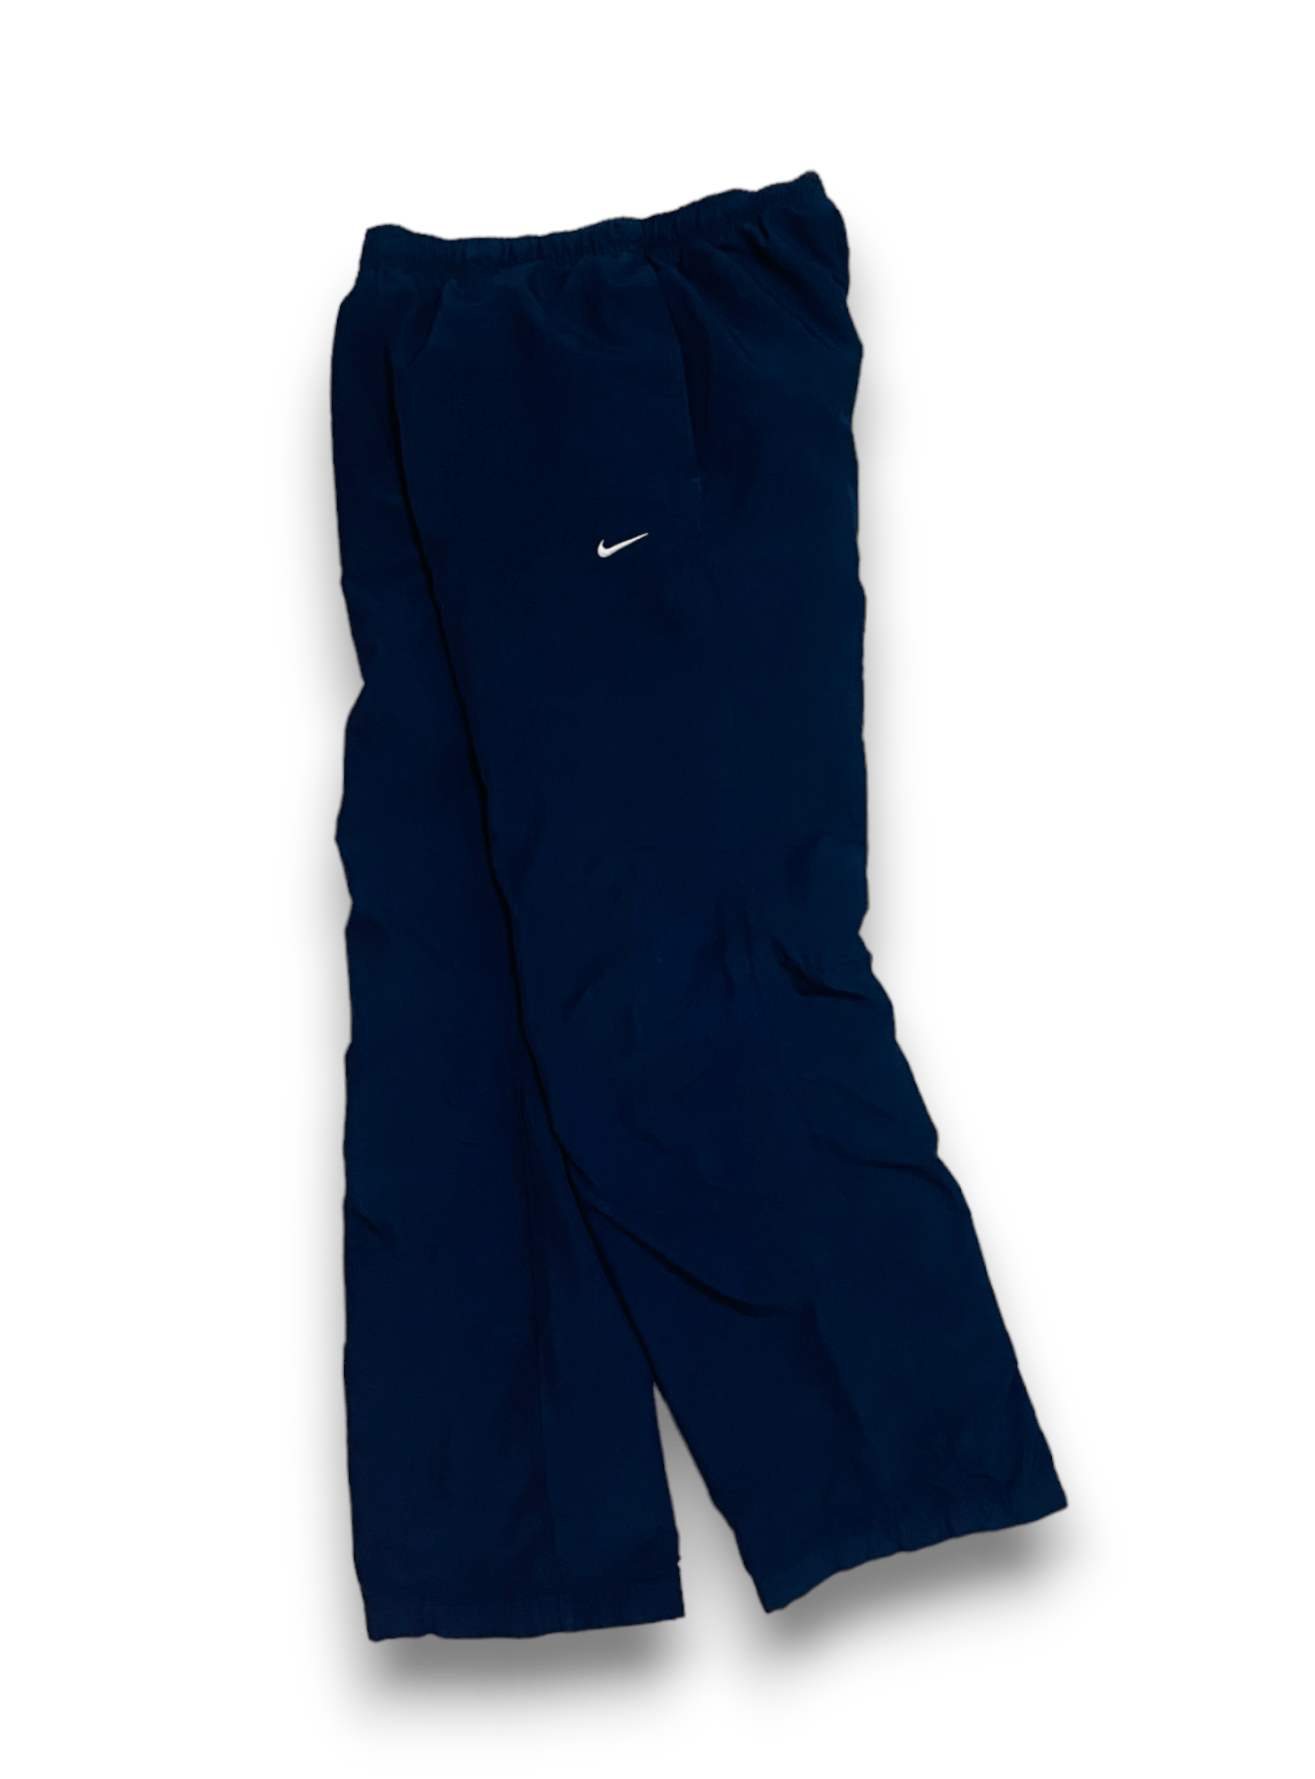 Nike Track Pants Y2K Navy Blue Streetwear Vintage Men’s M - 1